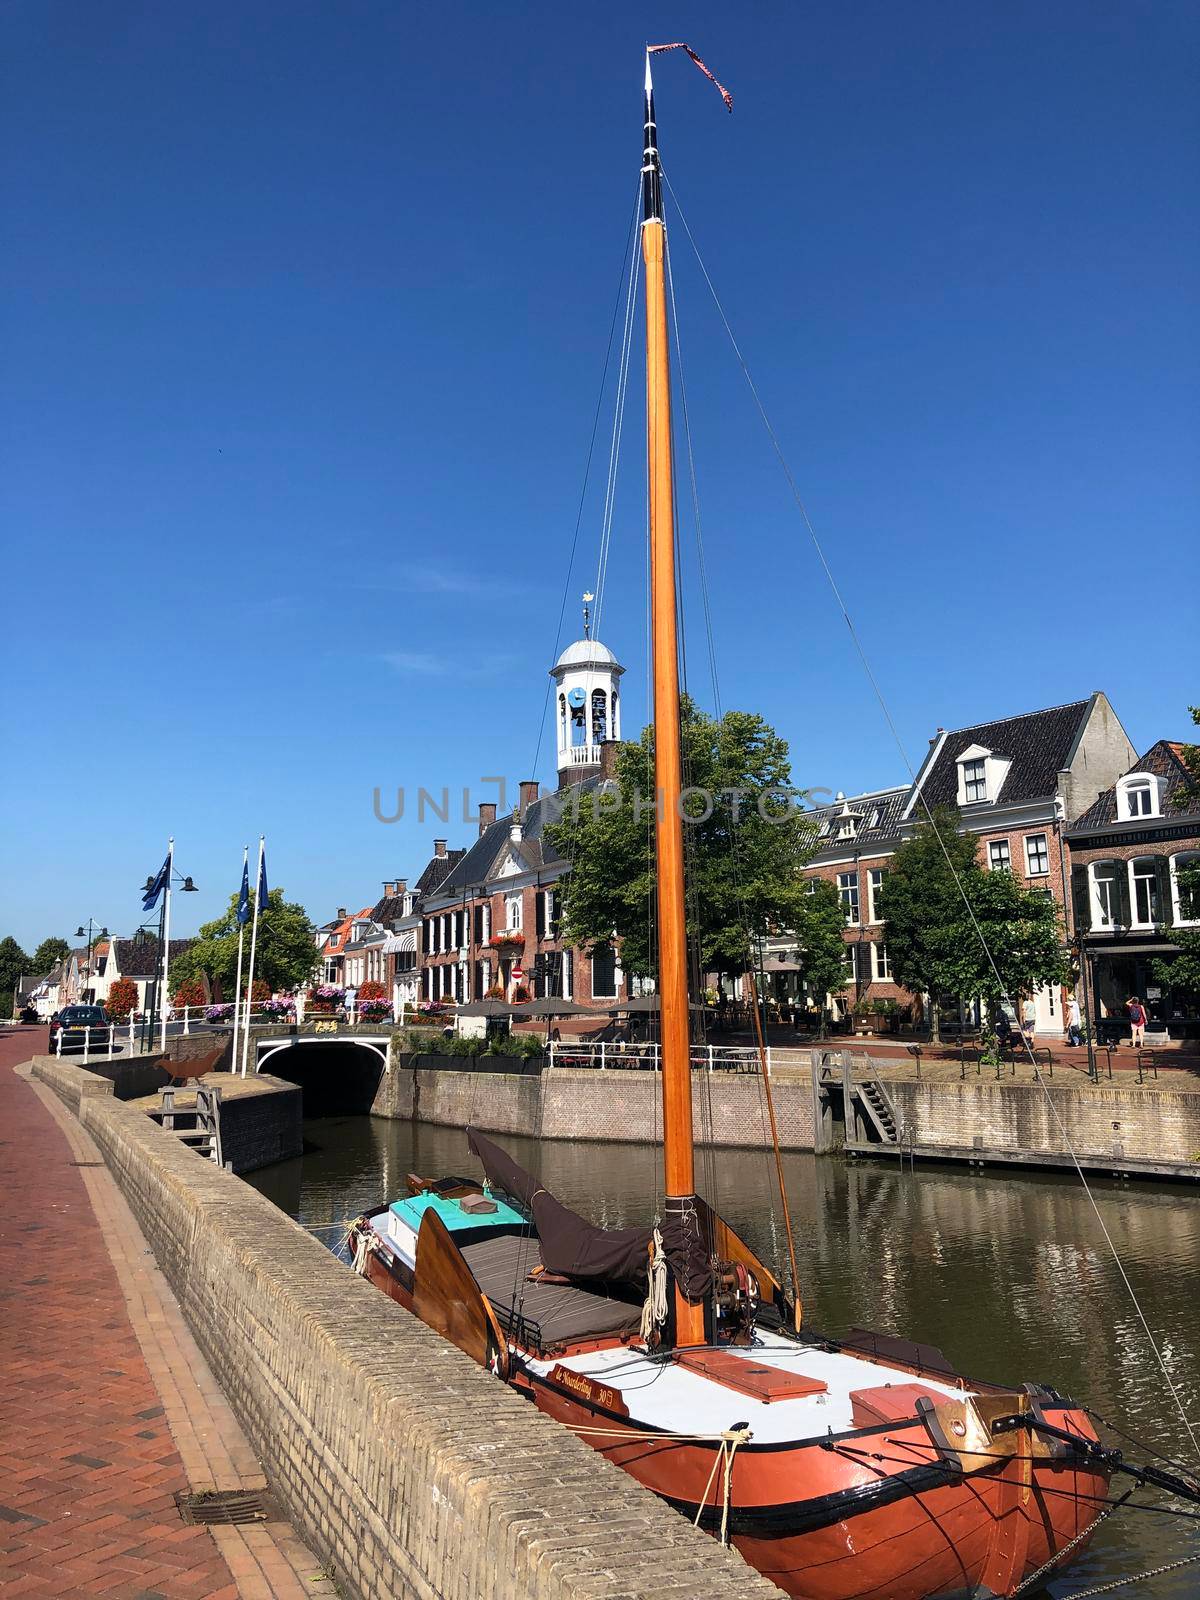 Skutsje at Het Grootdiep canal in Dokkum, Friesland The Netherlands